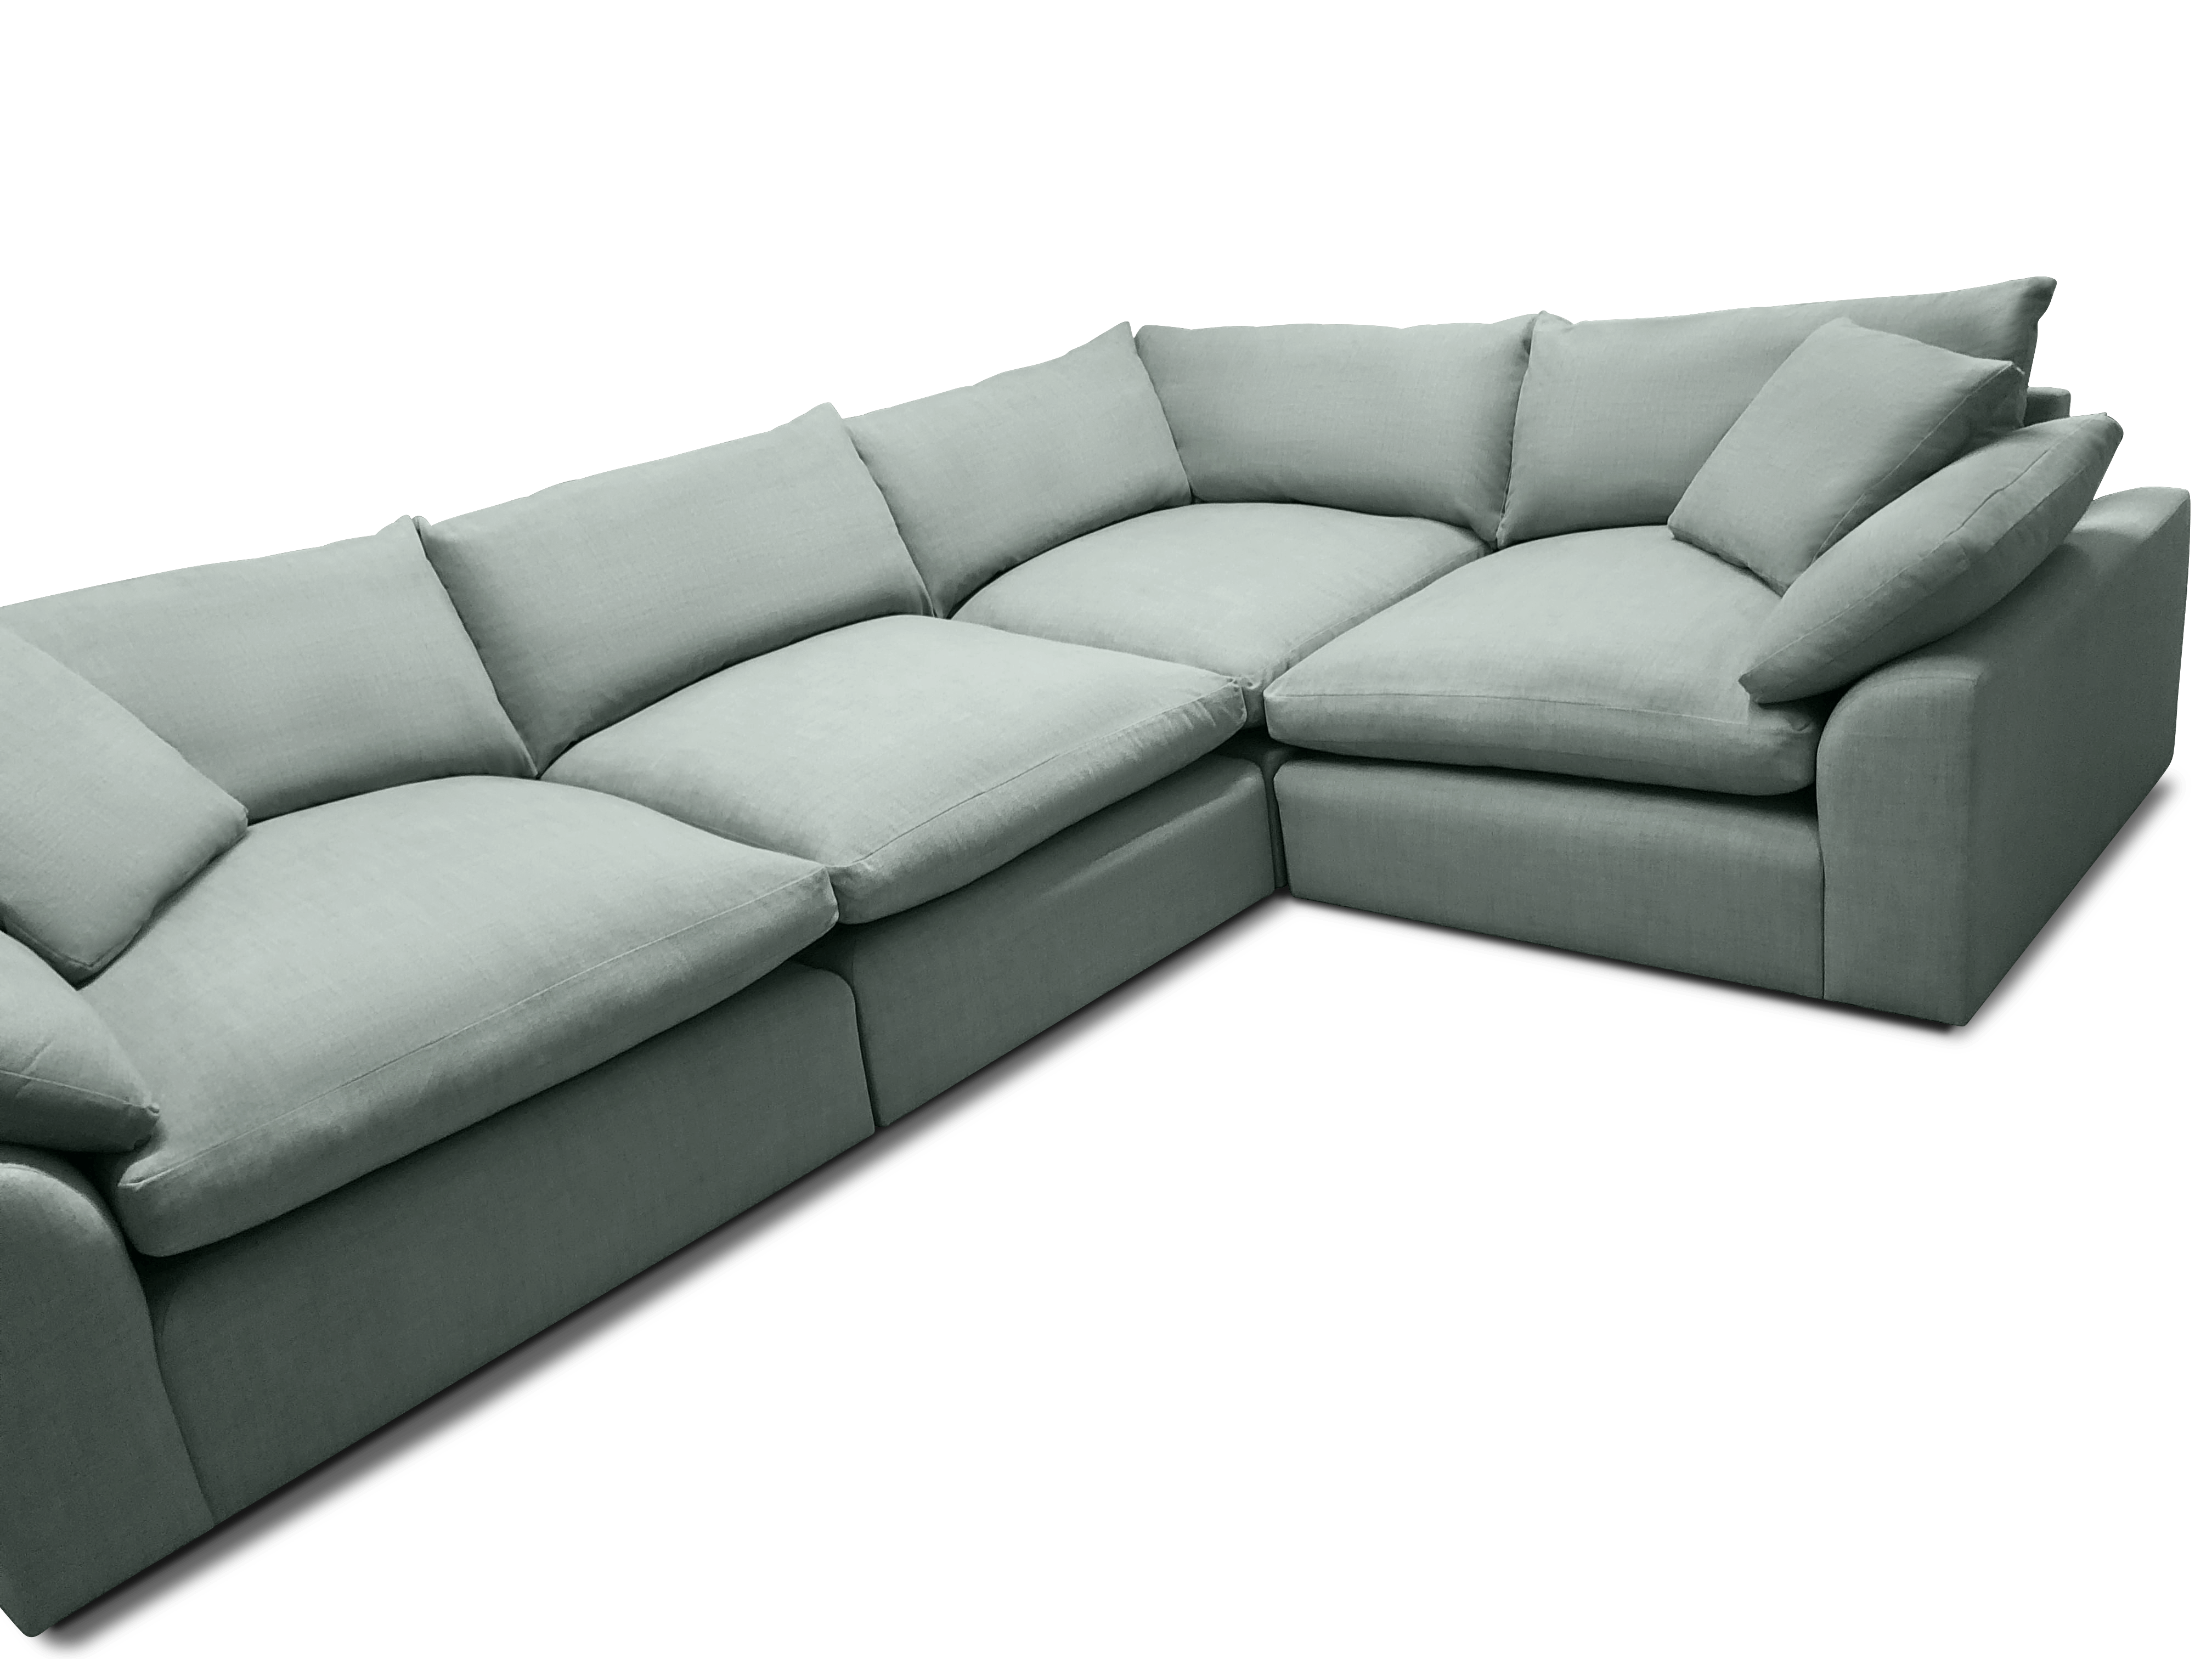 Large Right Hand Loaf Cuddlemuffin Modular Sofa